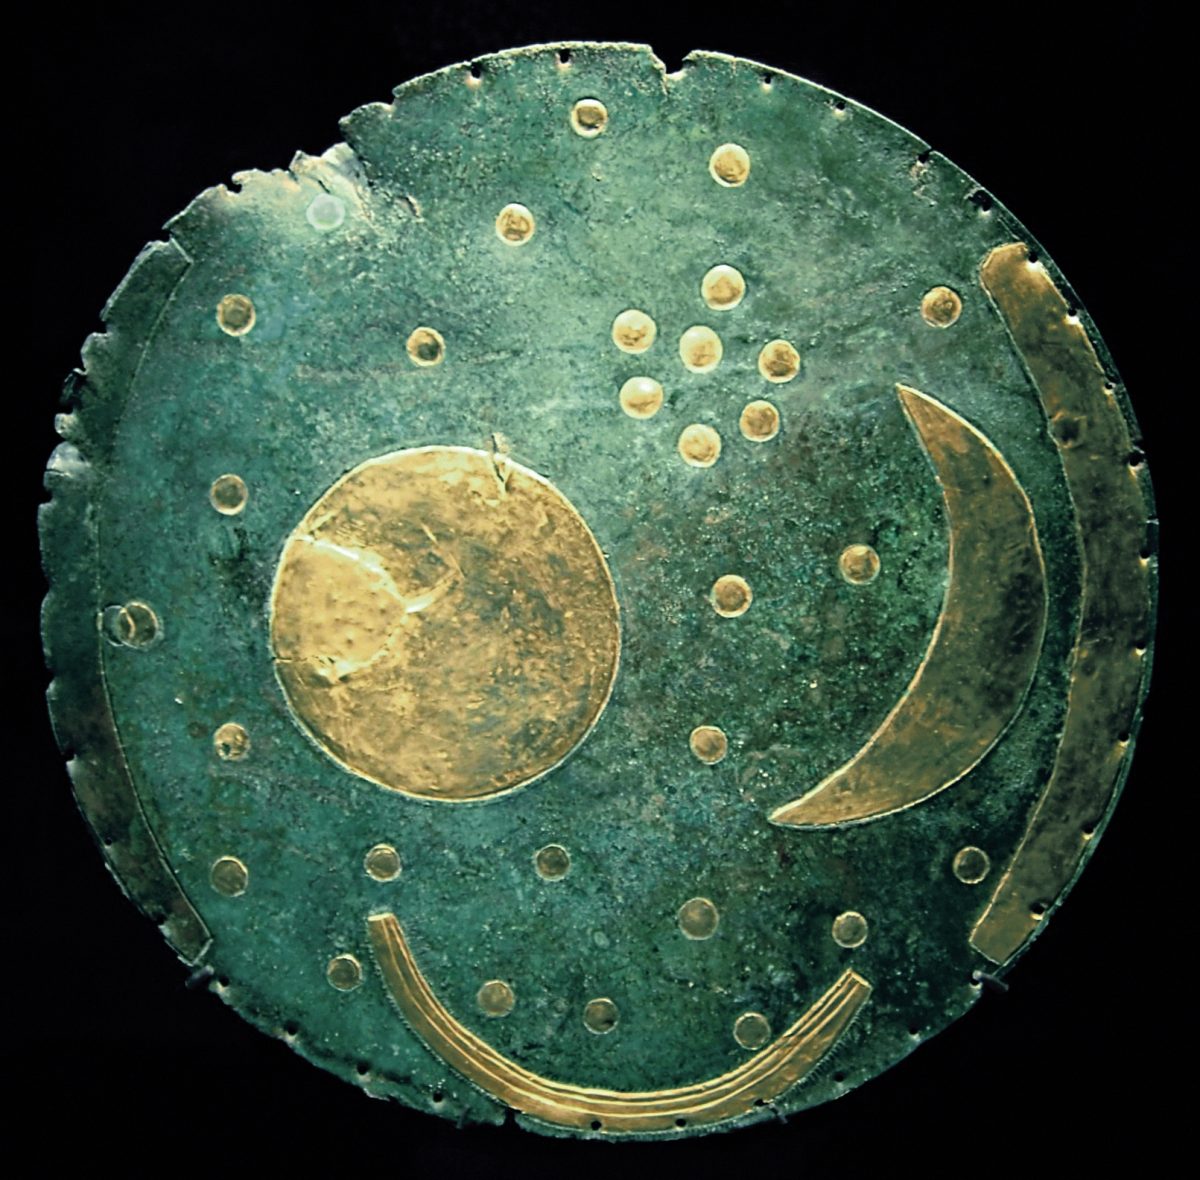 Nebeski disk iz Nebre: Otkriće kao u pravoj detektivskoj priči